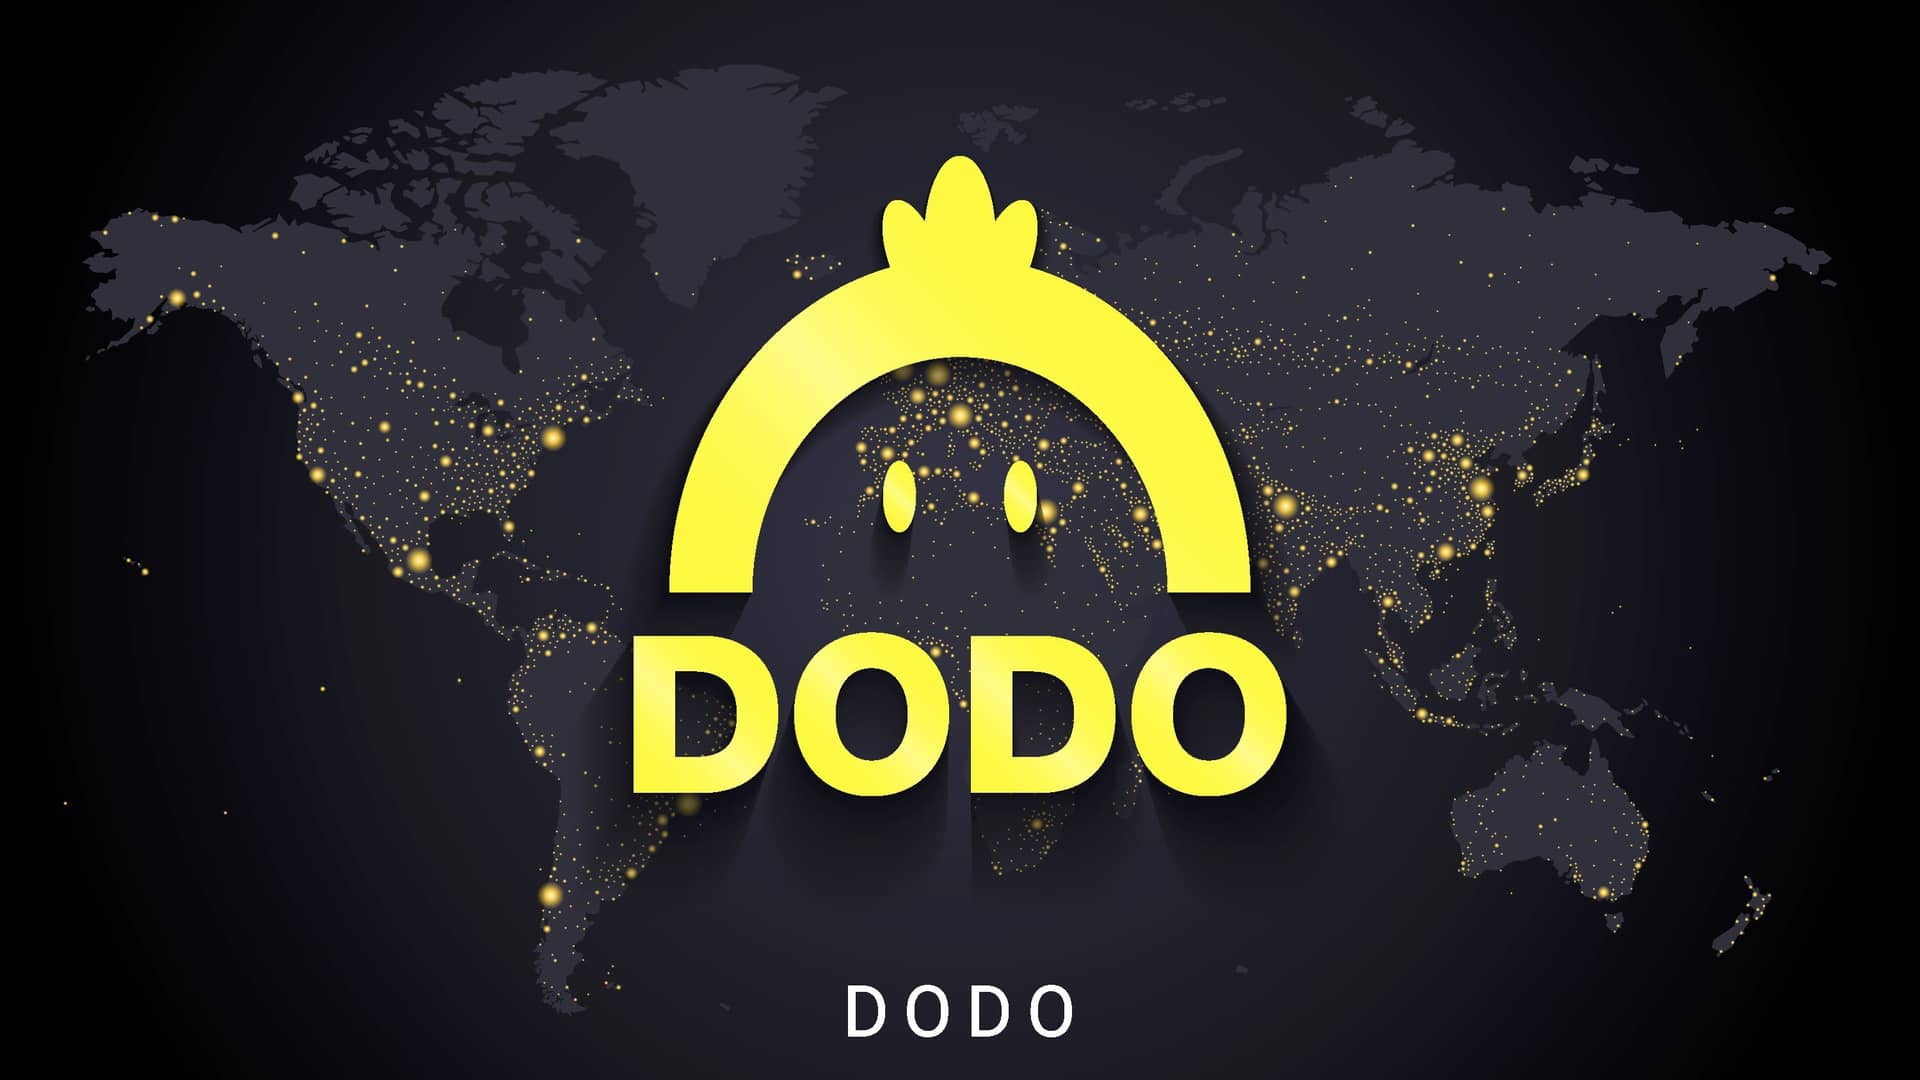 logotipo de la empresa de criptomonedas dodo sobre el mapa del mundo por la noche iluminado con lucecitas